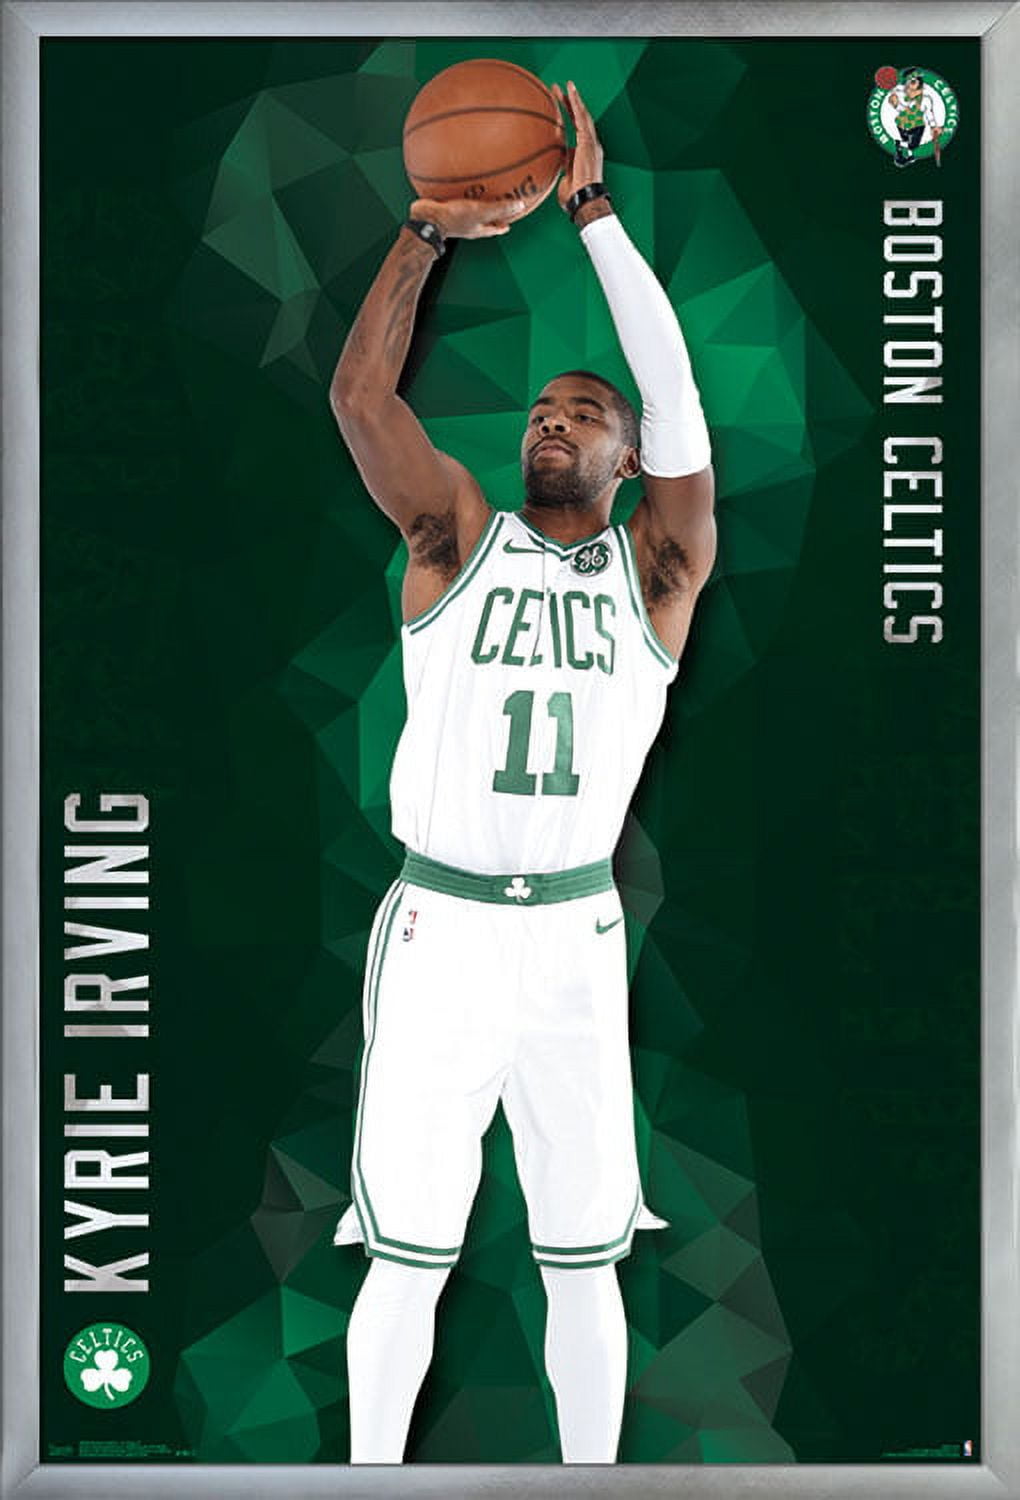 Kl 12# Nba Basketball Stars Oversized Wallpaper Boston Celtics No.11 Irving  Poster 60*40cm